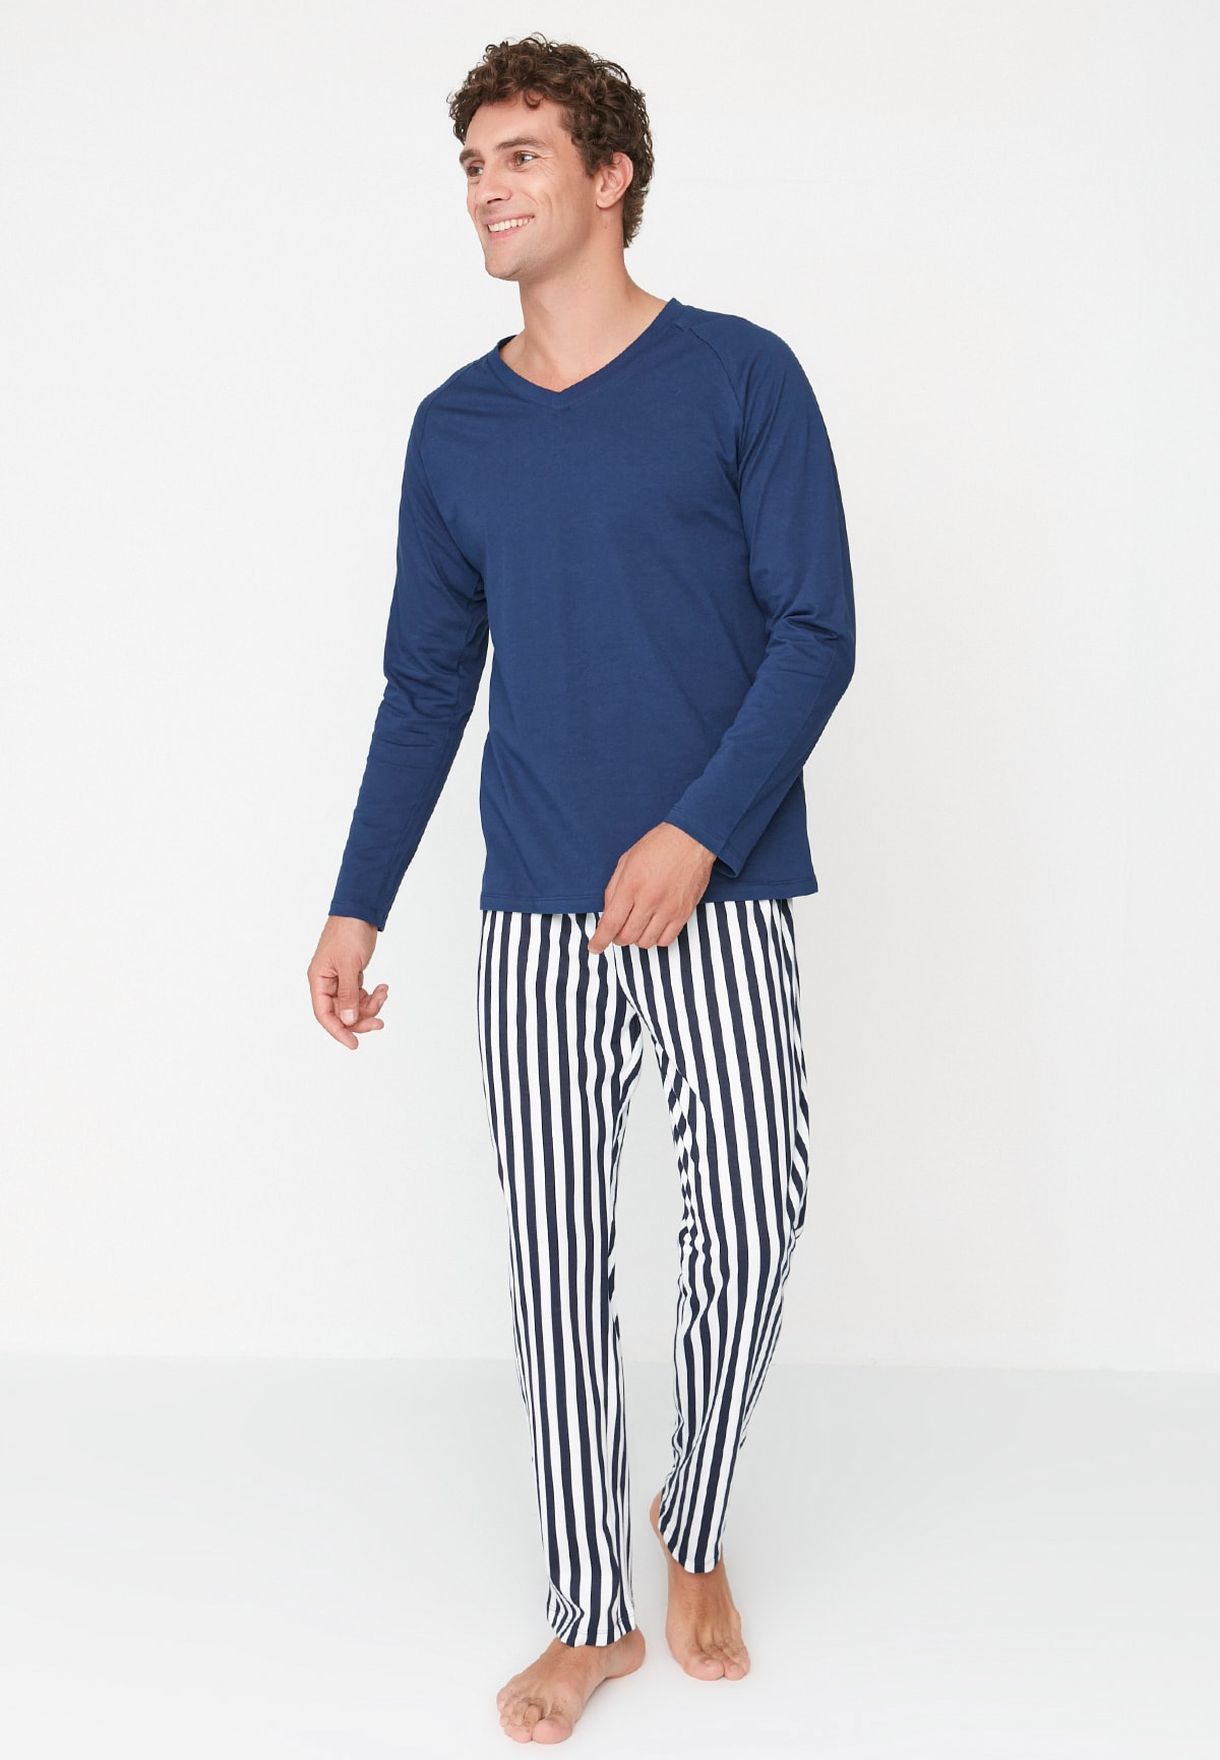 Striped Pyjama Set